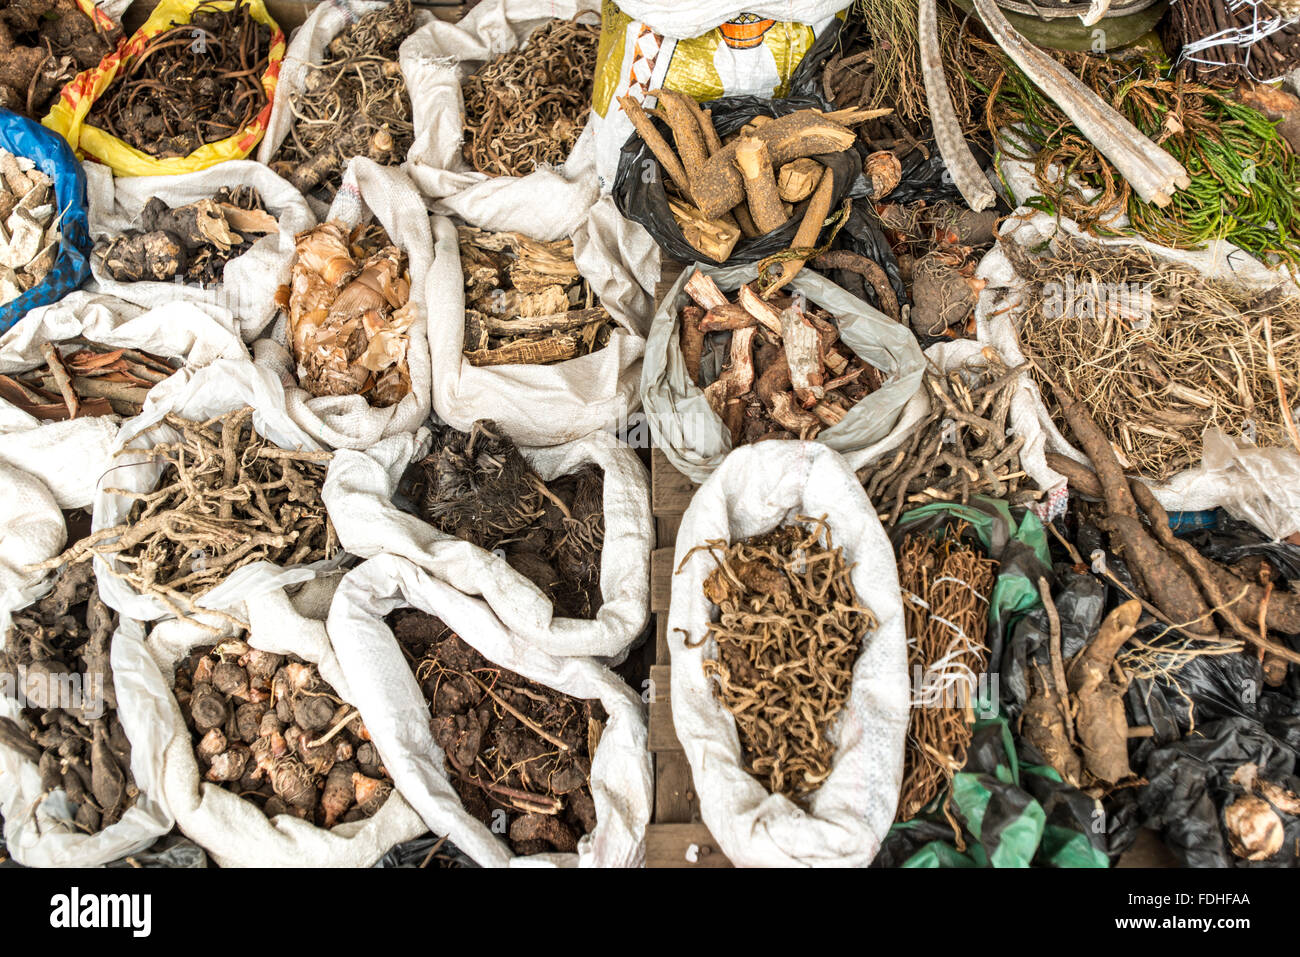 Les herbes médicinales pour la vente à la production de gros Manzini et marché artisanal au Swaziland, l'Afrique Banque D'Images